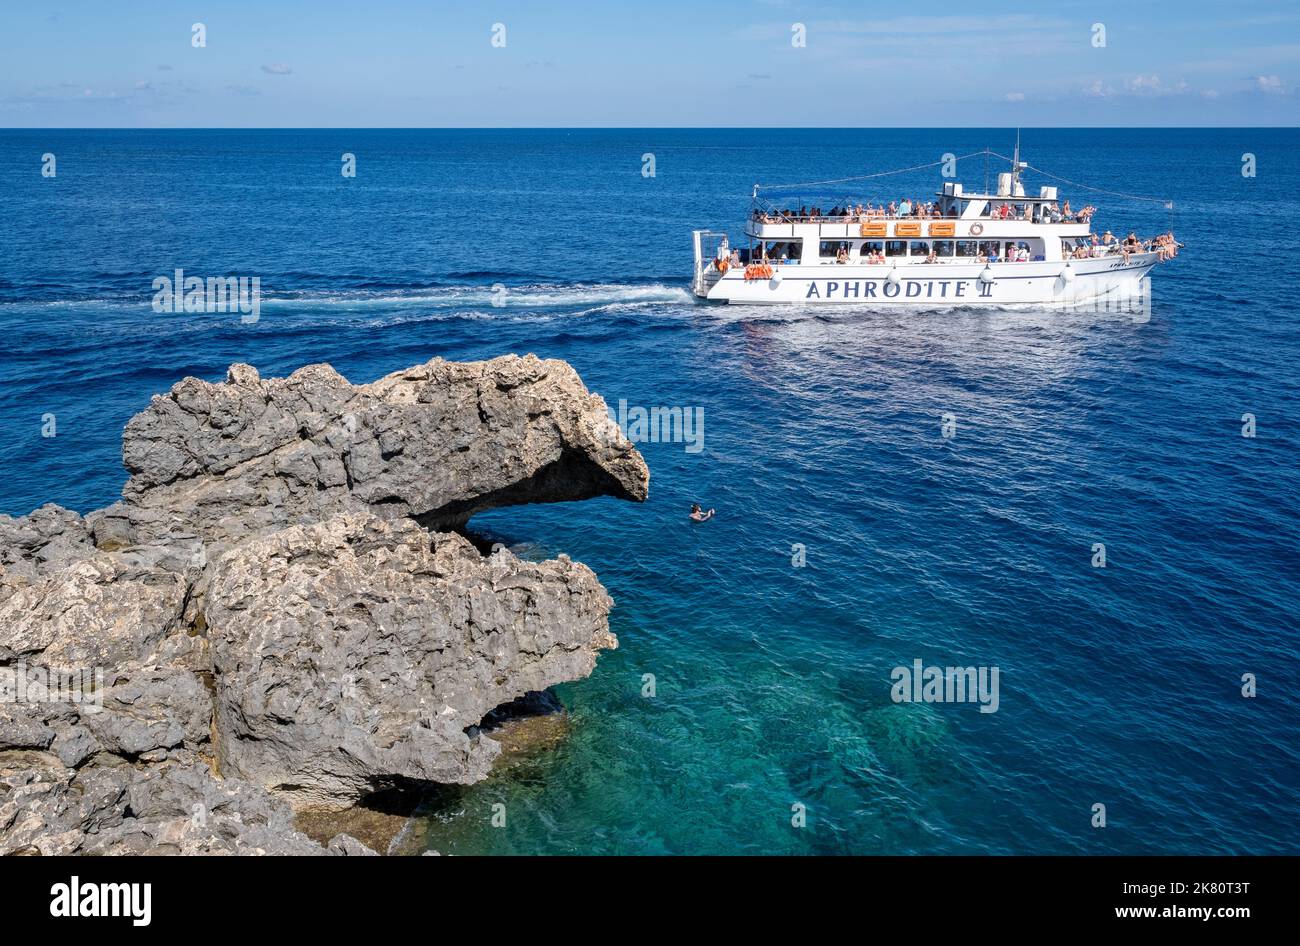 La barca turistica Aphrodite 2 che naviga intorno alla costa di Capo Greco, Cipro. Foto Stock